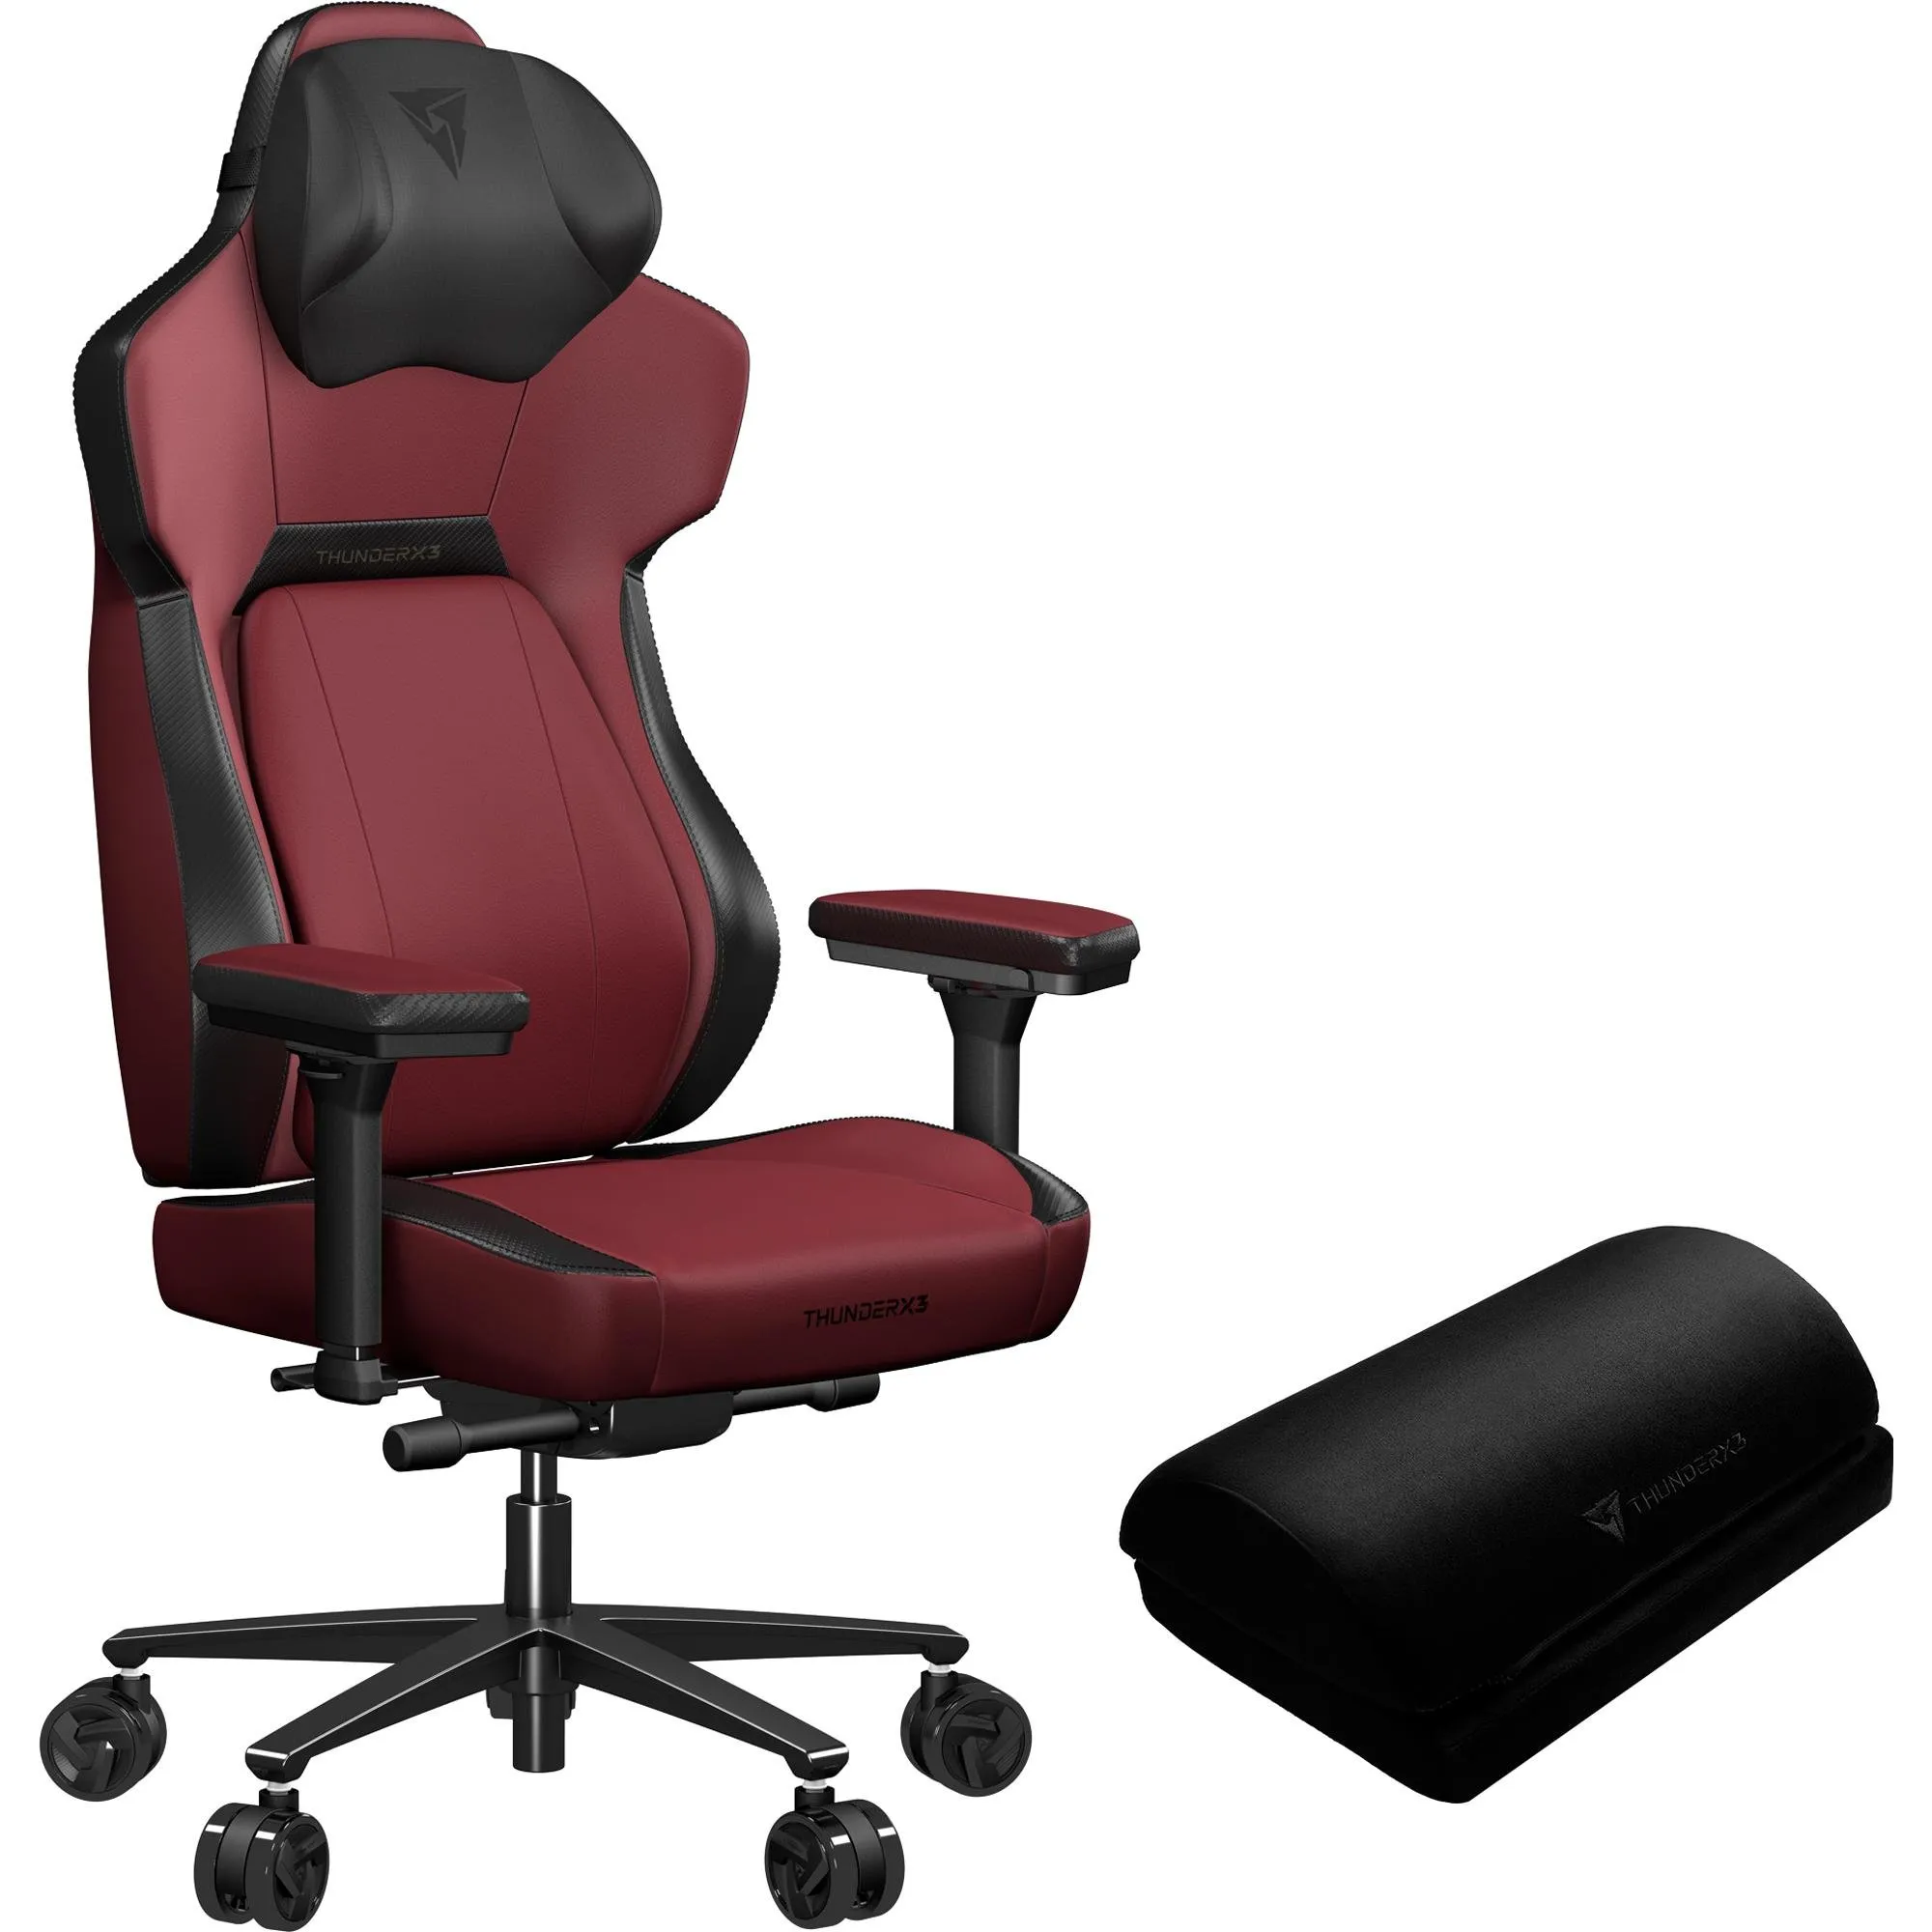 Cadeira Gamer ThunderX3 CORE Modern Vermelha por 3.548,99 à vista no boleto/pix ou parcele em até 12x sem juros. Compre na loja Mundomax!